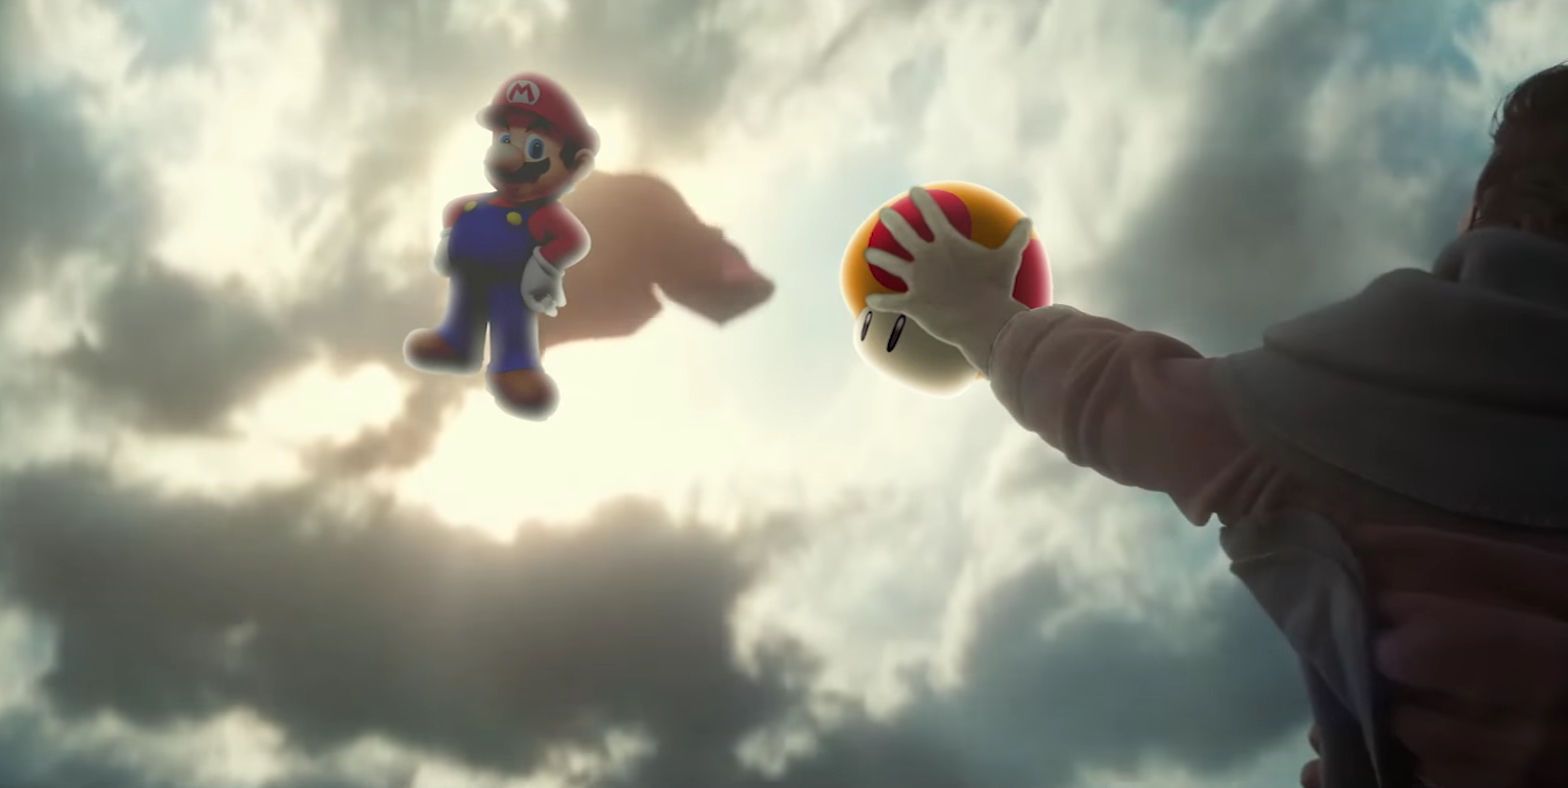 Mario in the Weird Batman V Superman Trailer